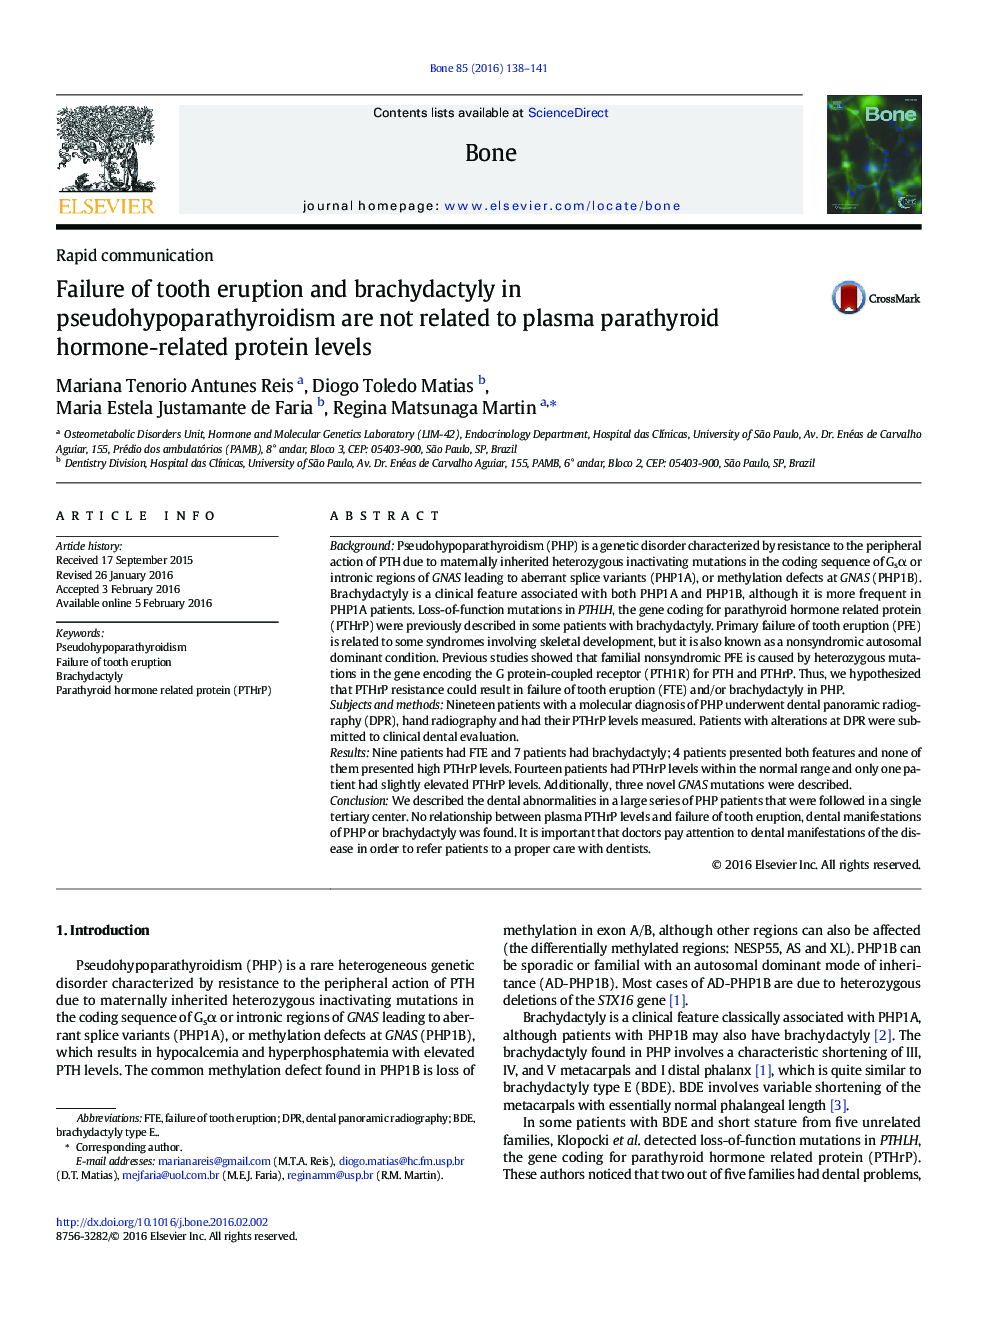 شکست خرابی دندان و brachydactyly در pseudohypoparathyroidism به سطوح پروتئین مرتبط با هورمون پاراتیروئید پلاسما مربوط نیست